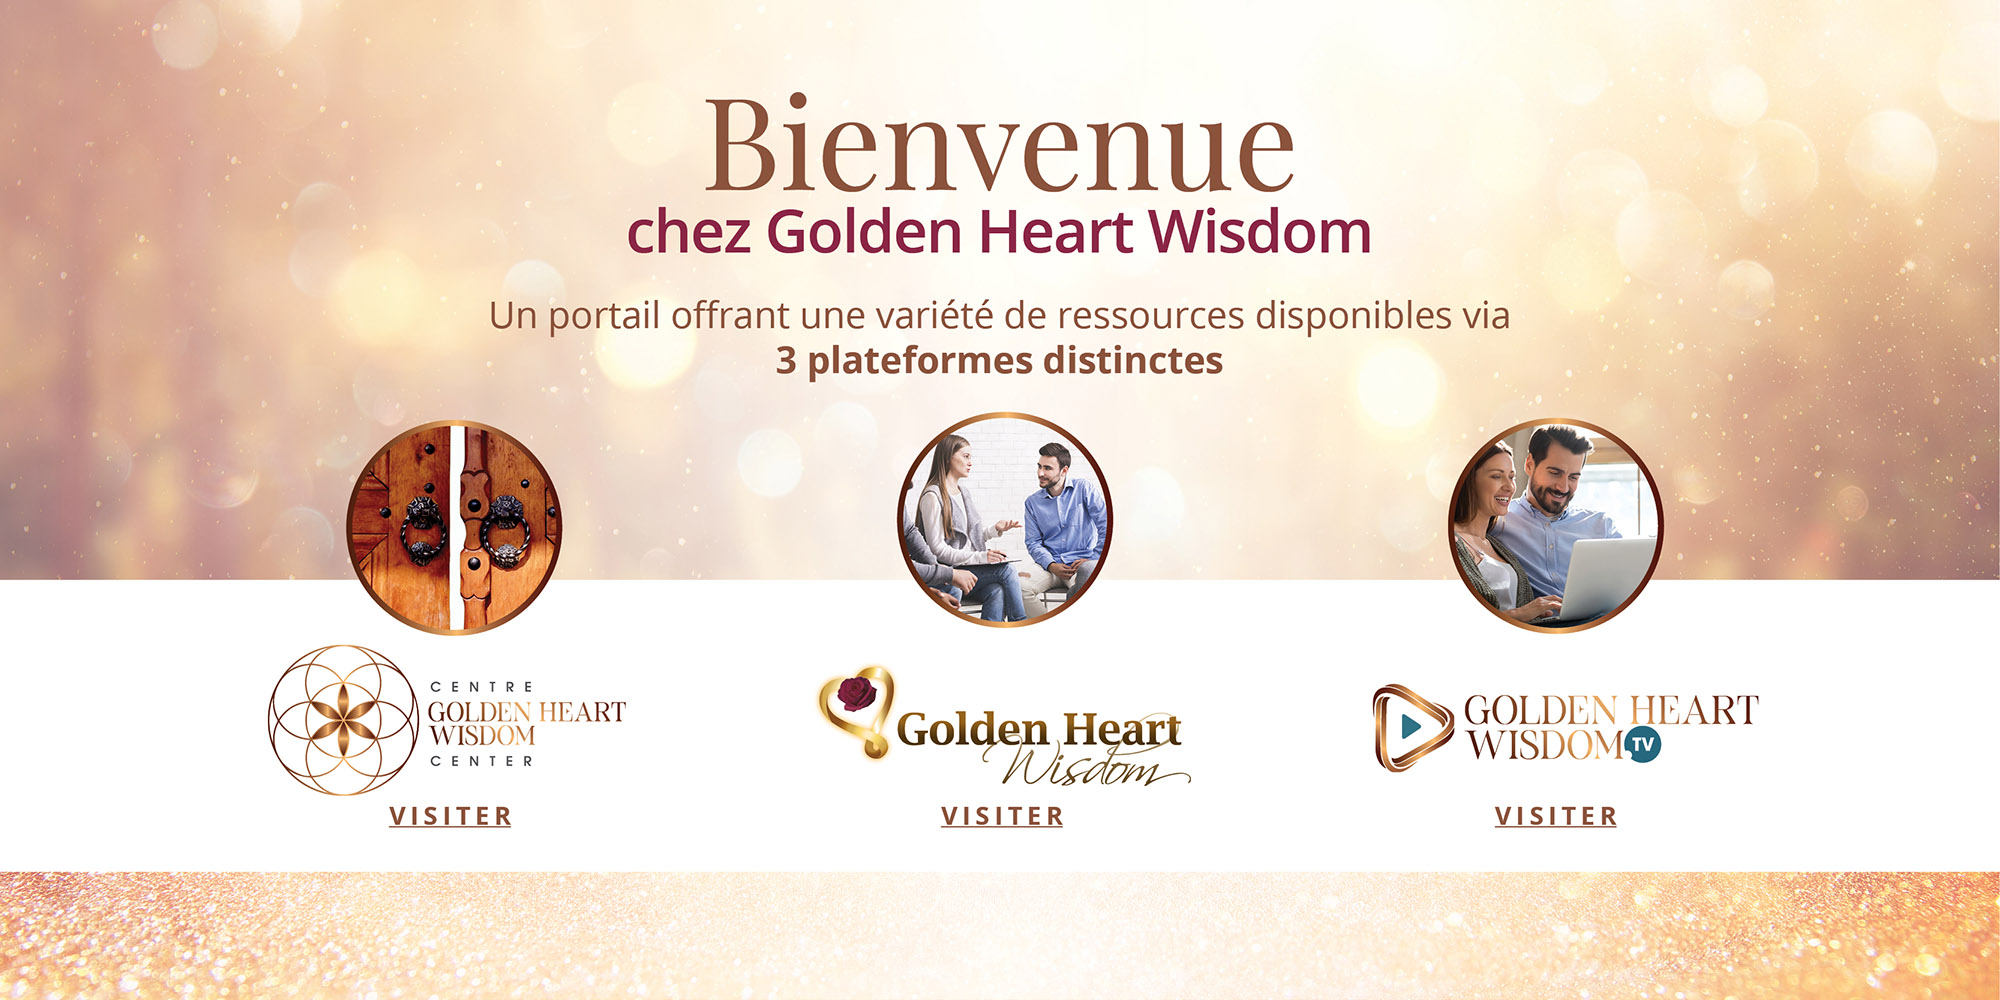 Golden-Heart-Wisdom_portail